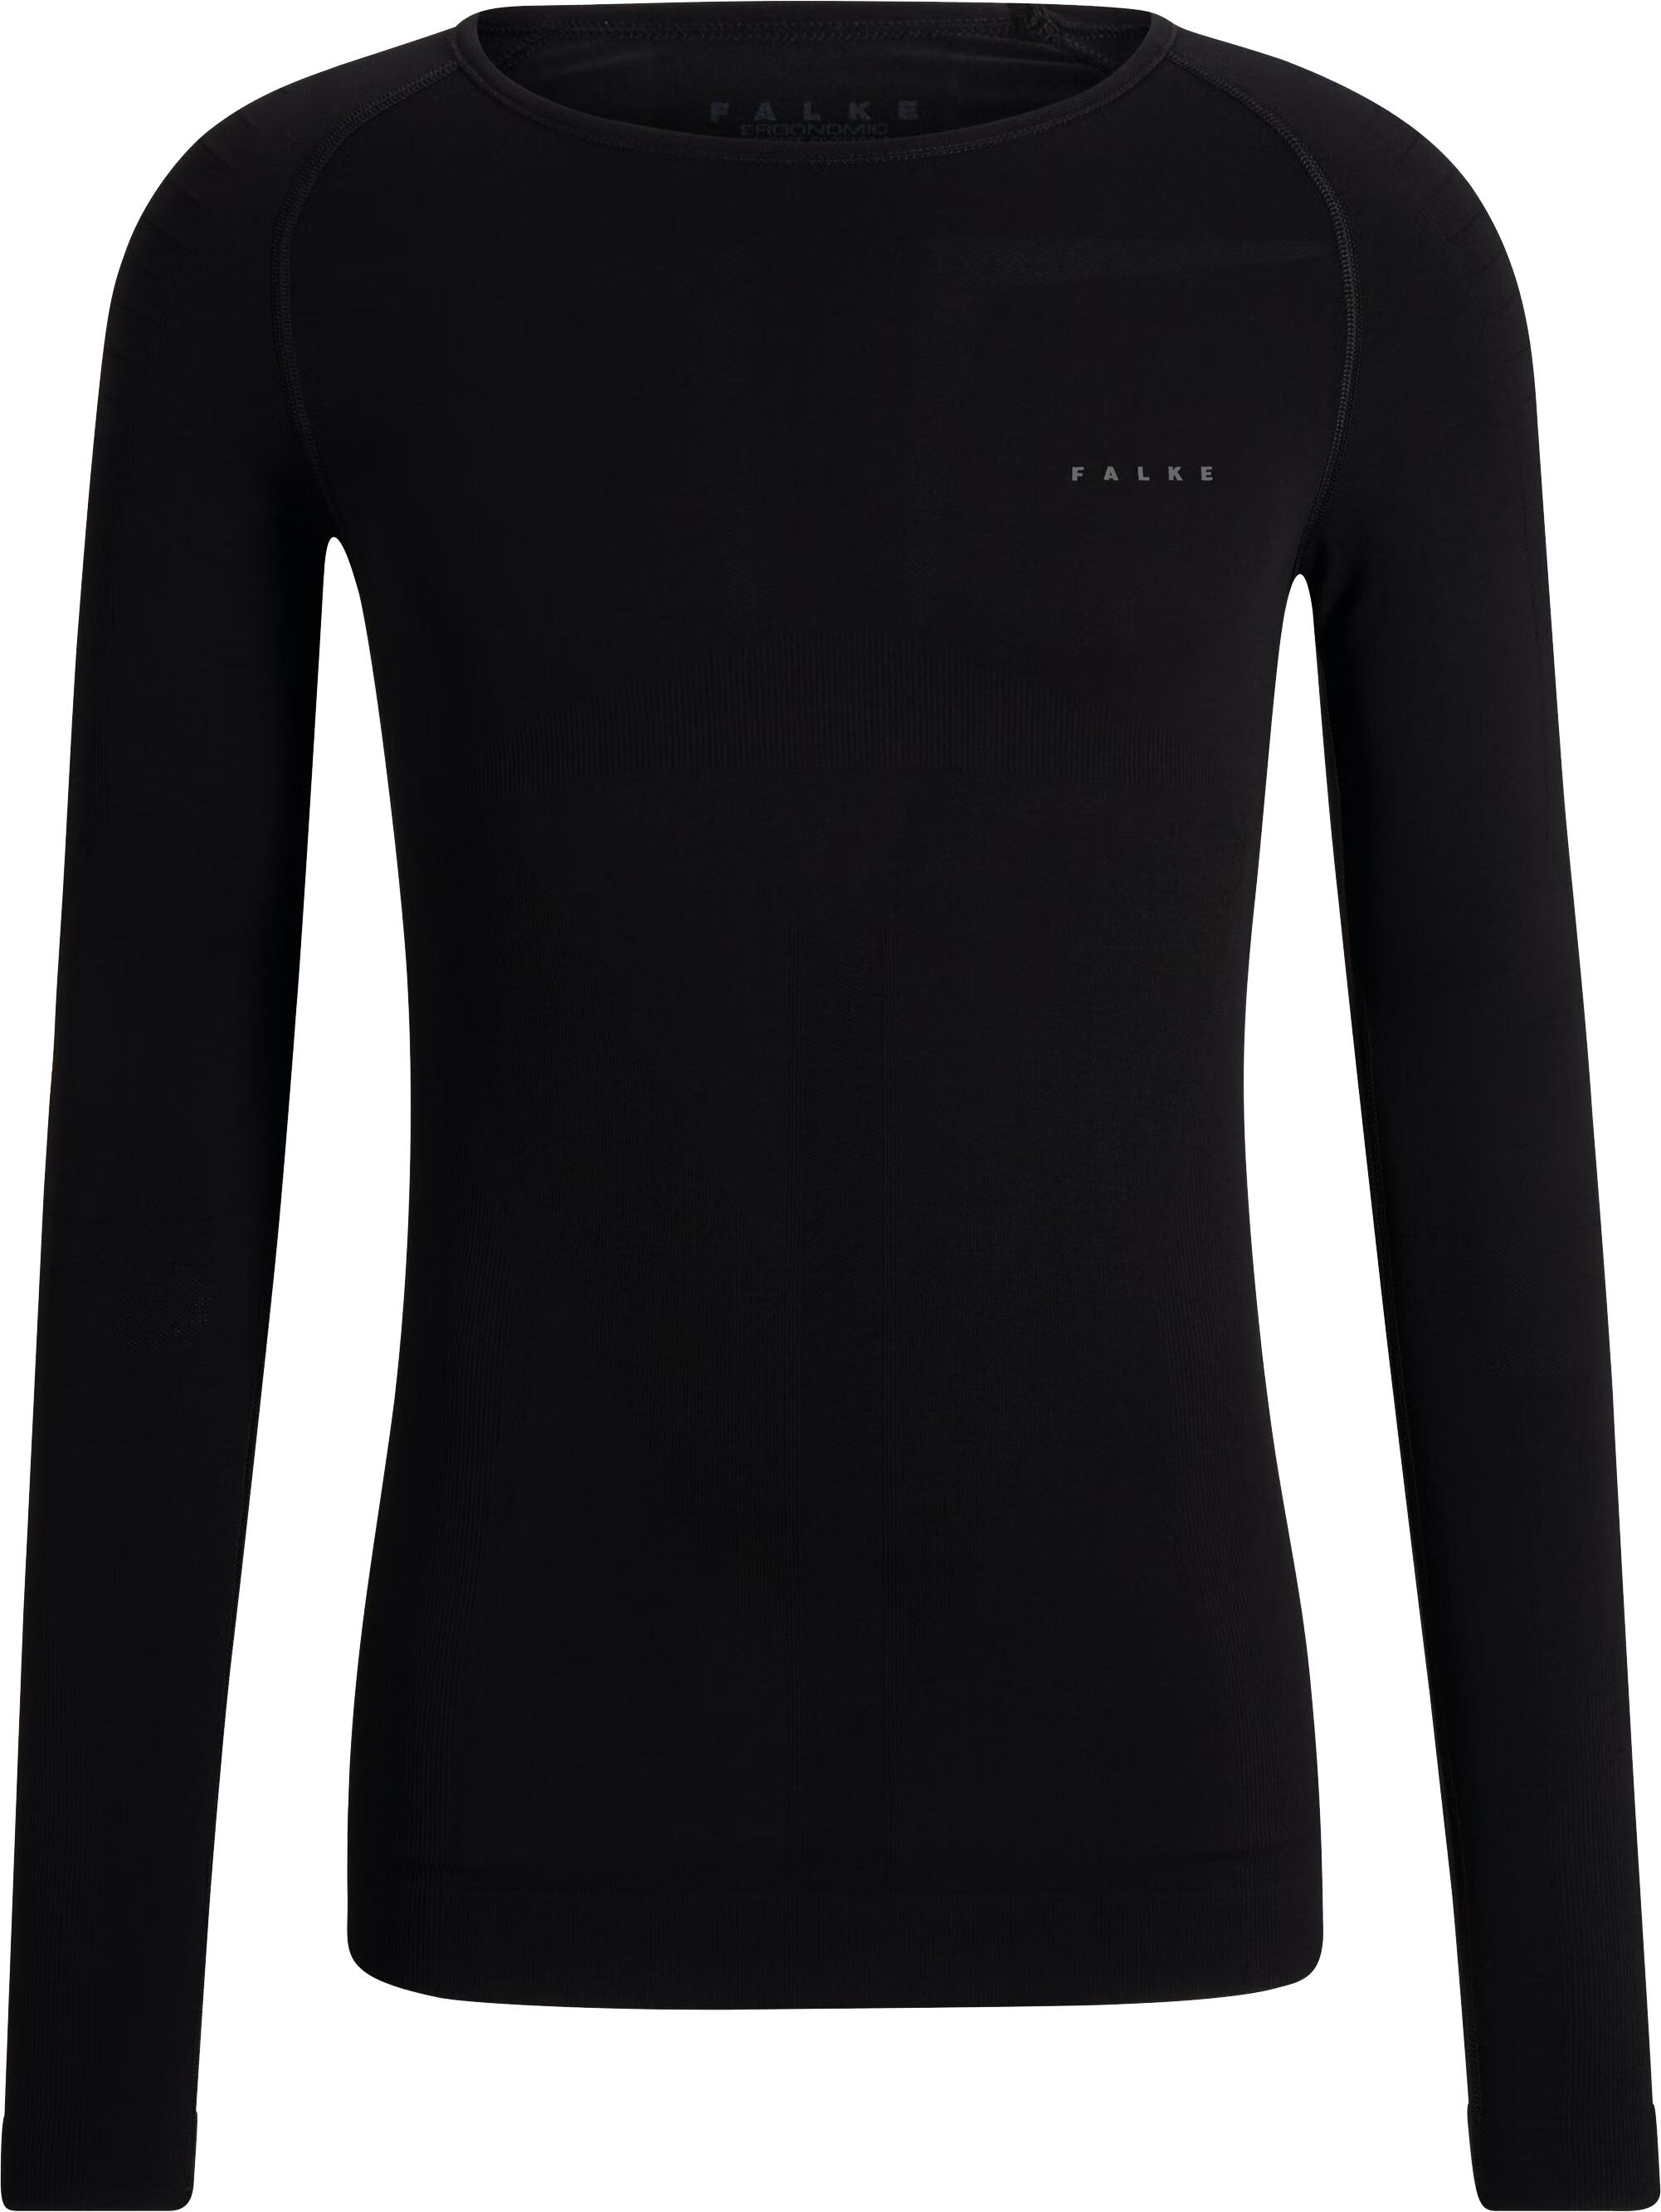 Falke Thermal Shirt Ergonomic Black size L